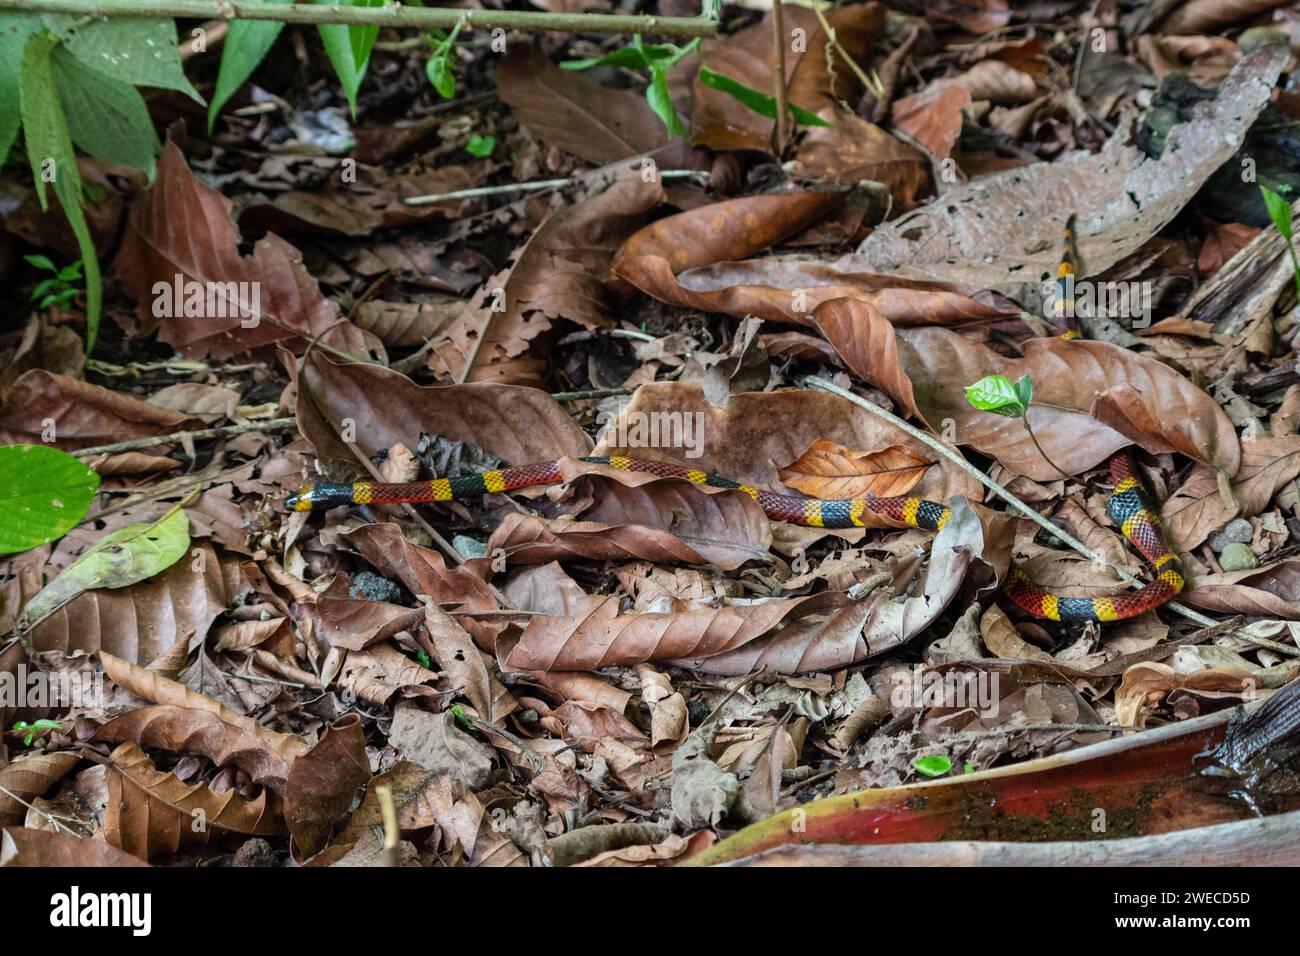 Incontro serpentino: Tra i bradipi in un parco costaricano, la natura svela i suoi segreti mentre un vivace serpente corallino attraversa con grazia il nostro percorso Foto Stock